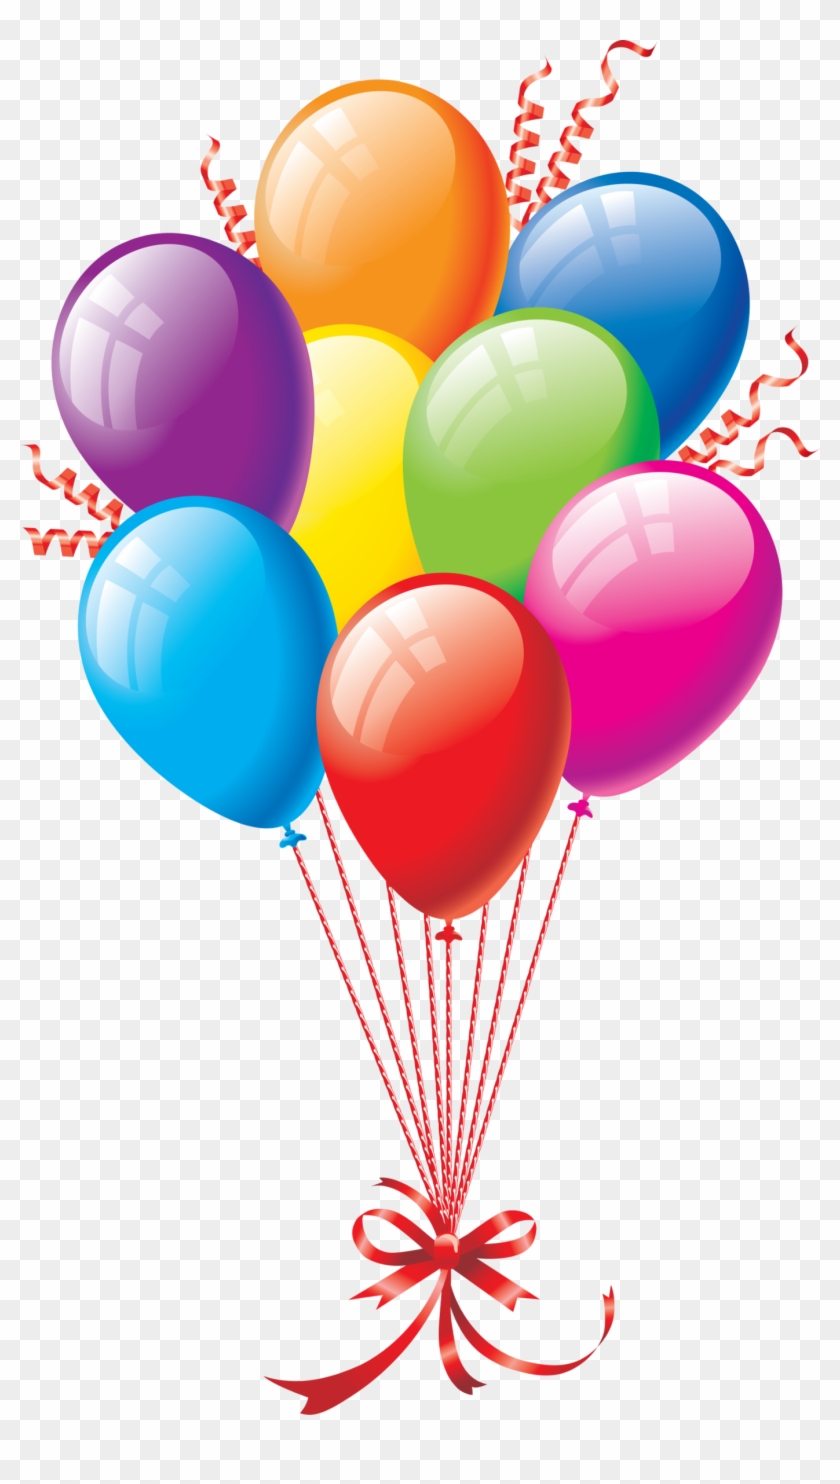 Balloon Birthday Anniversary Clip Art - Balloon Birthday Anniversary Clip Art #177824